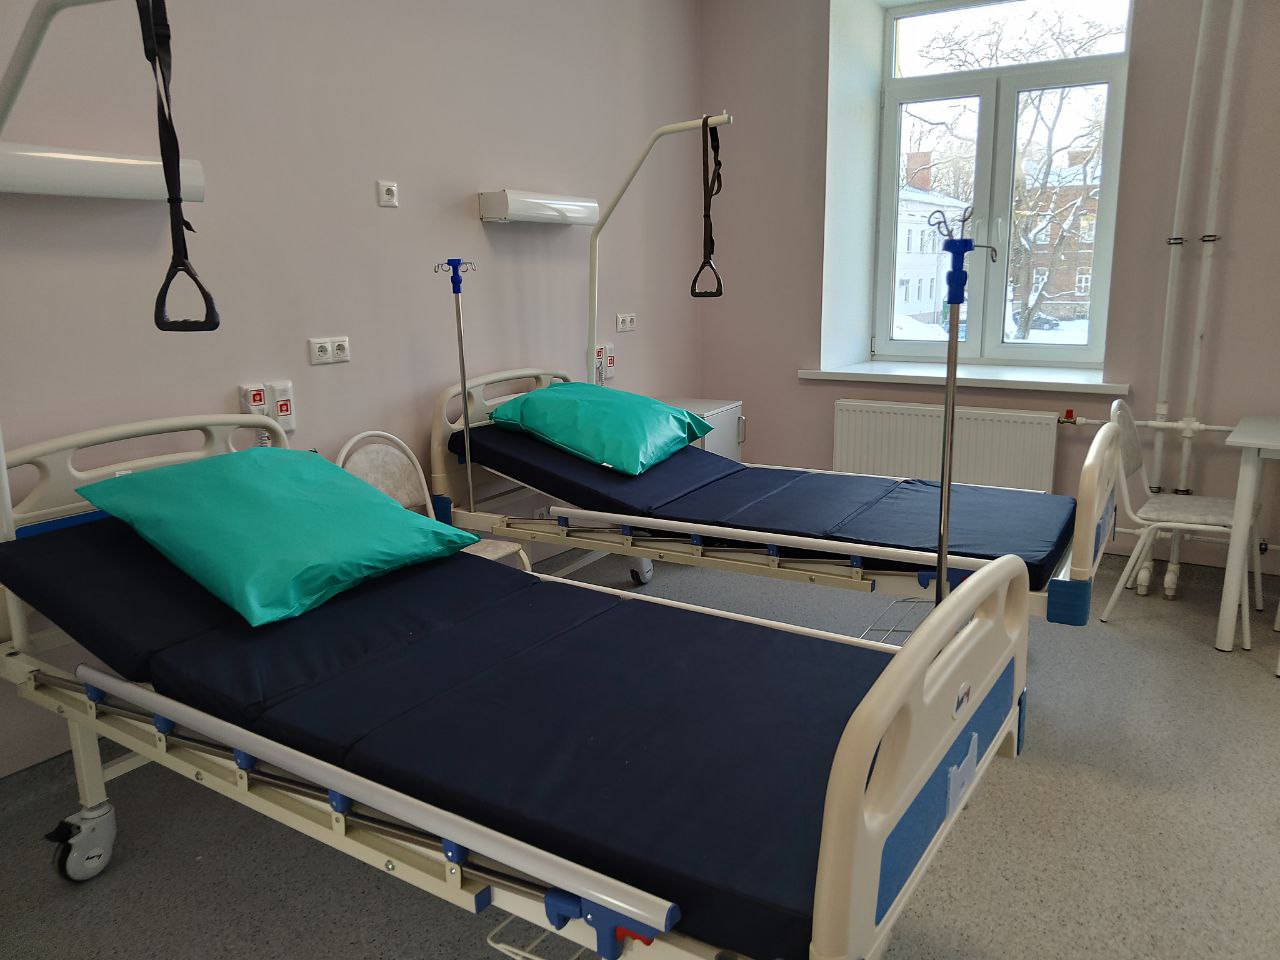 Глава Минздрава Михаил Мурашко оценил позитивные улучшения в первой окружной больнице Костромы